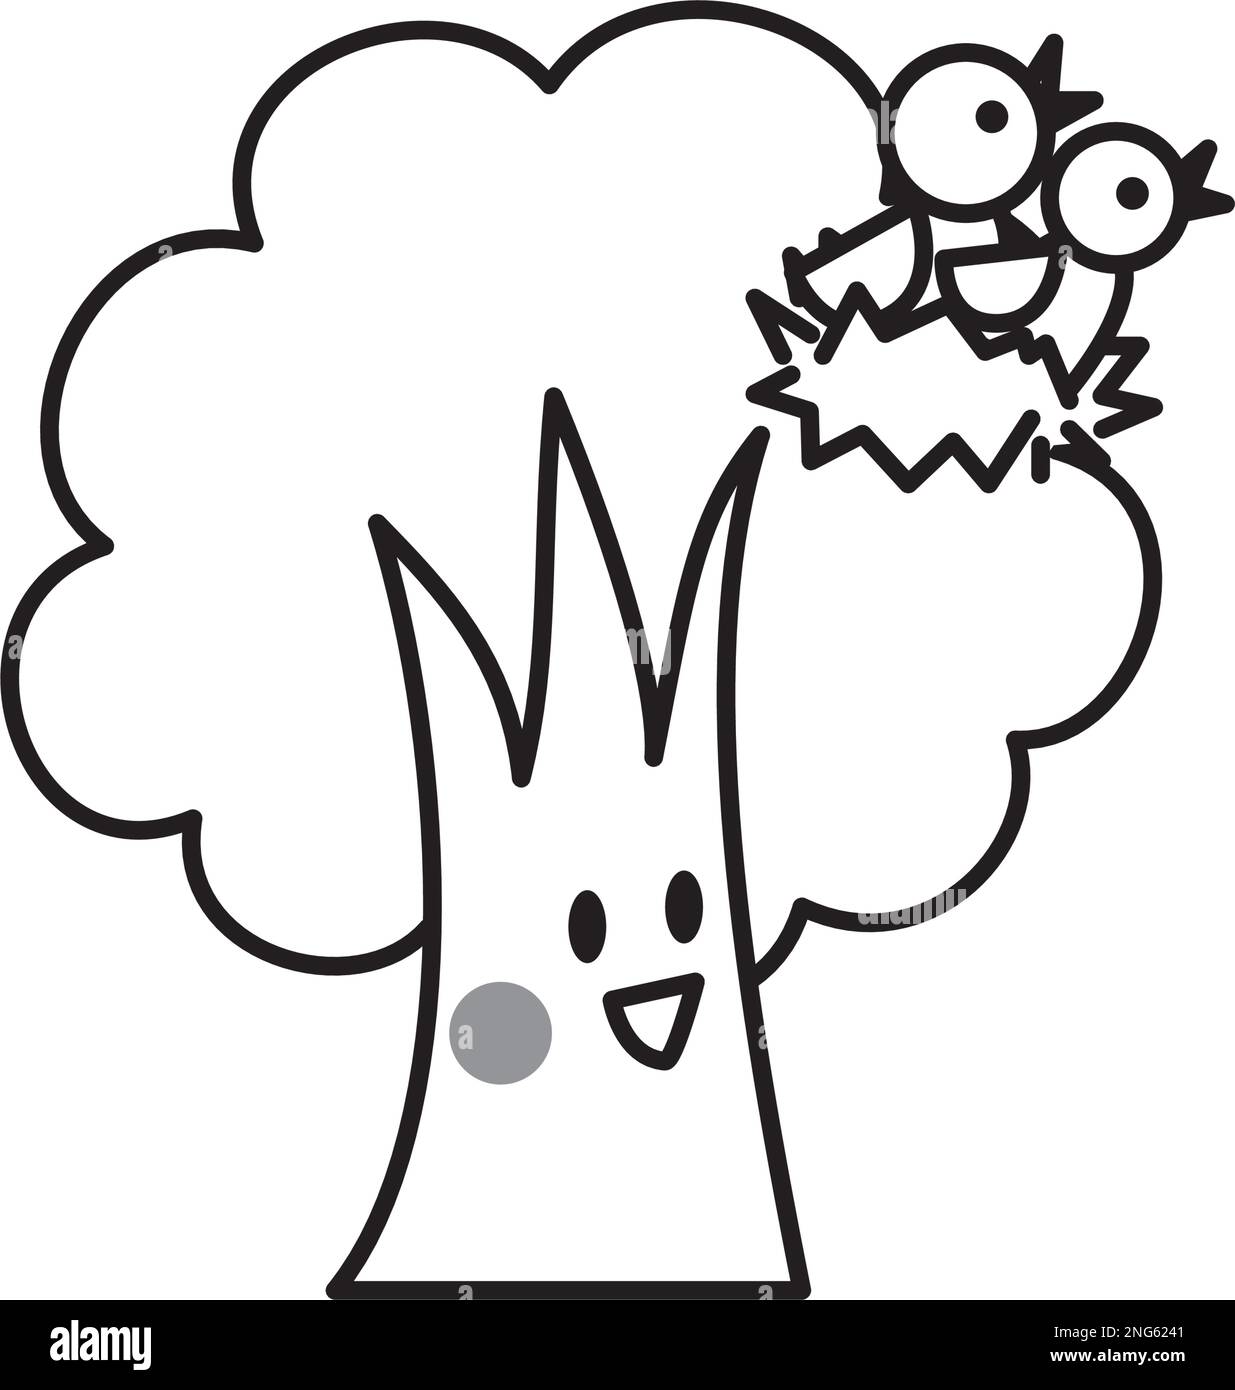 Ein Baumpalent, der auf ein Vogelnest starrt und lächelt. Schwarz-weiße Linienzeichnung. Eine süße Illustration eines deformierten Baumes. Stock Vektor